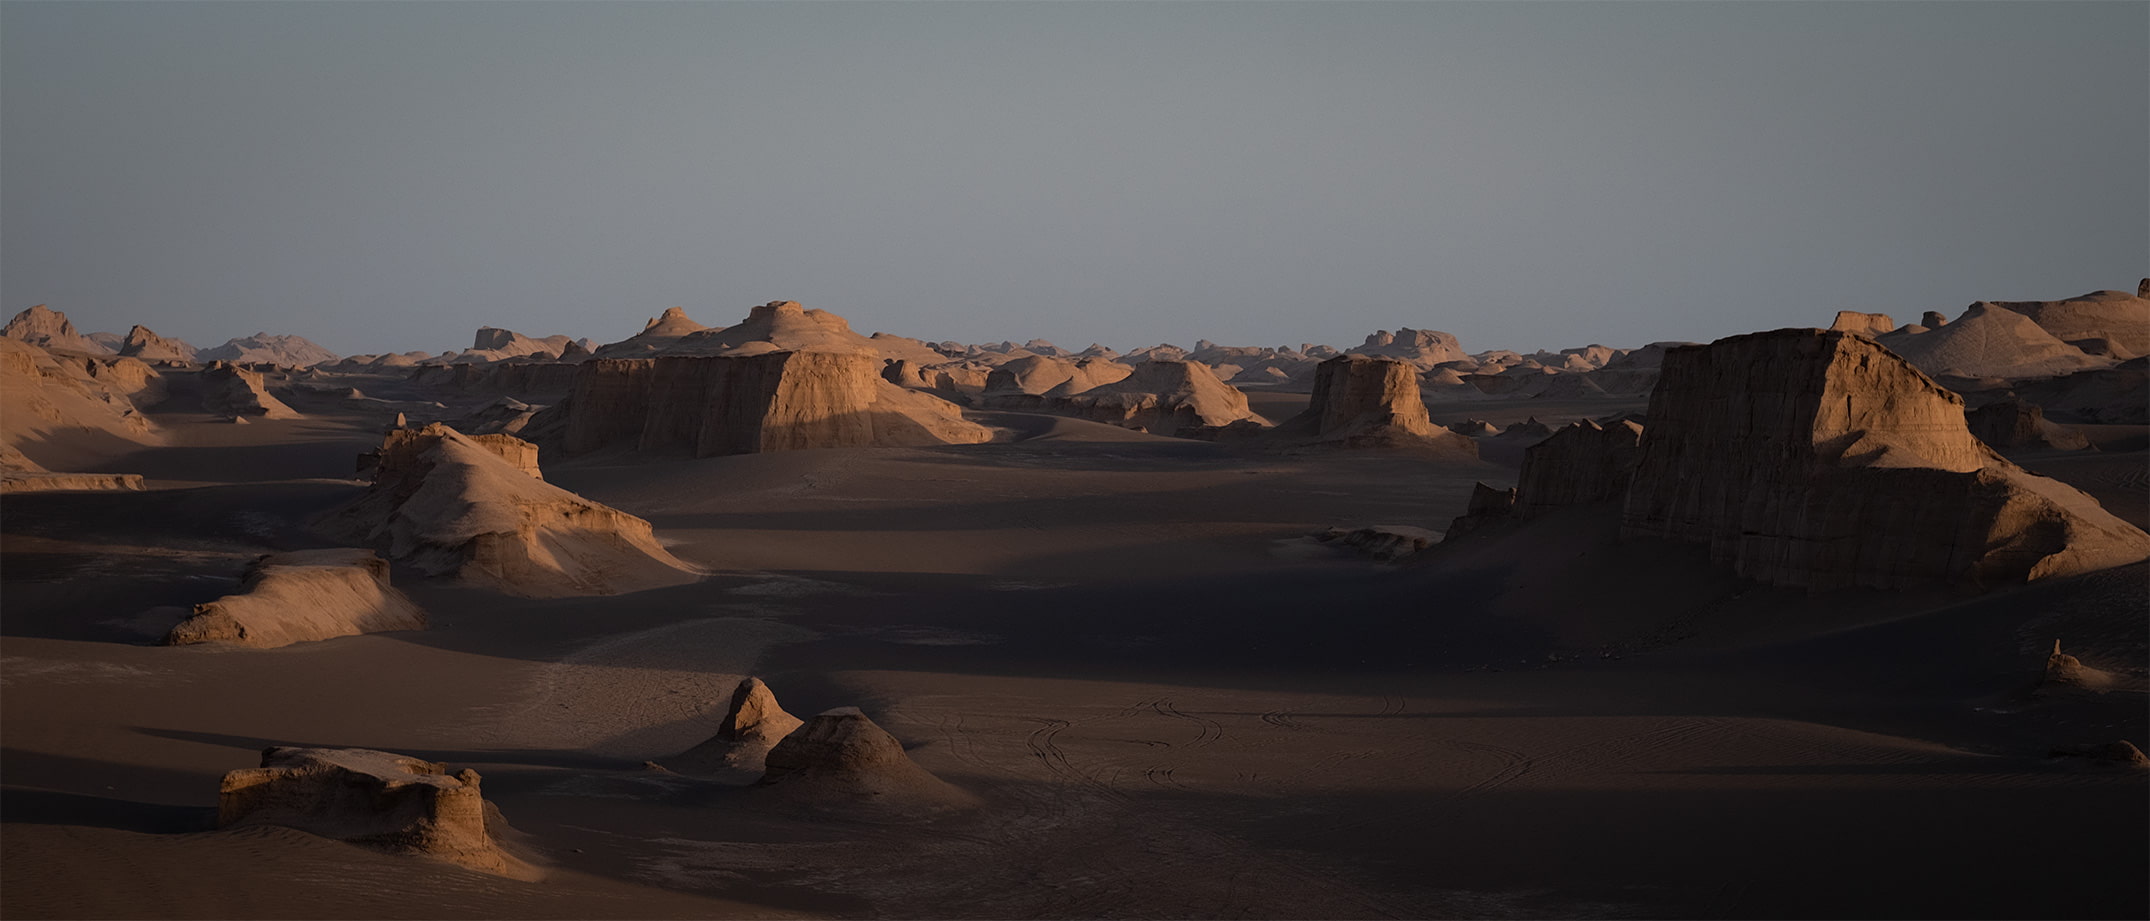 Desert Wüste Lut Iran